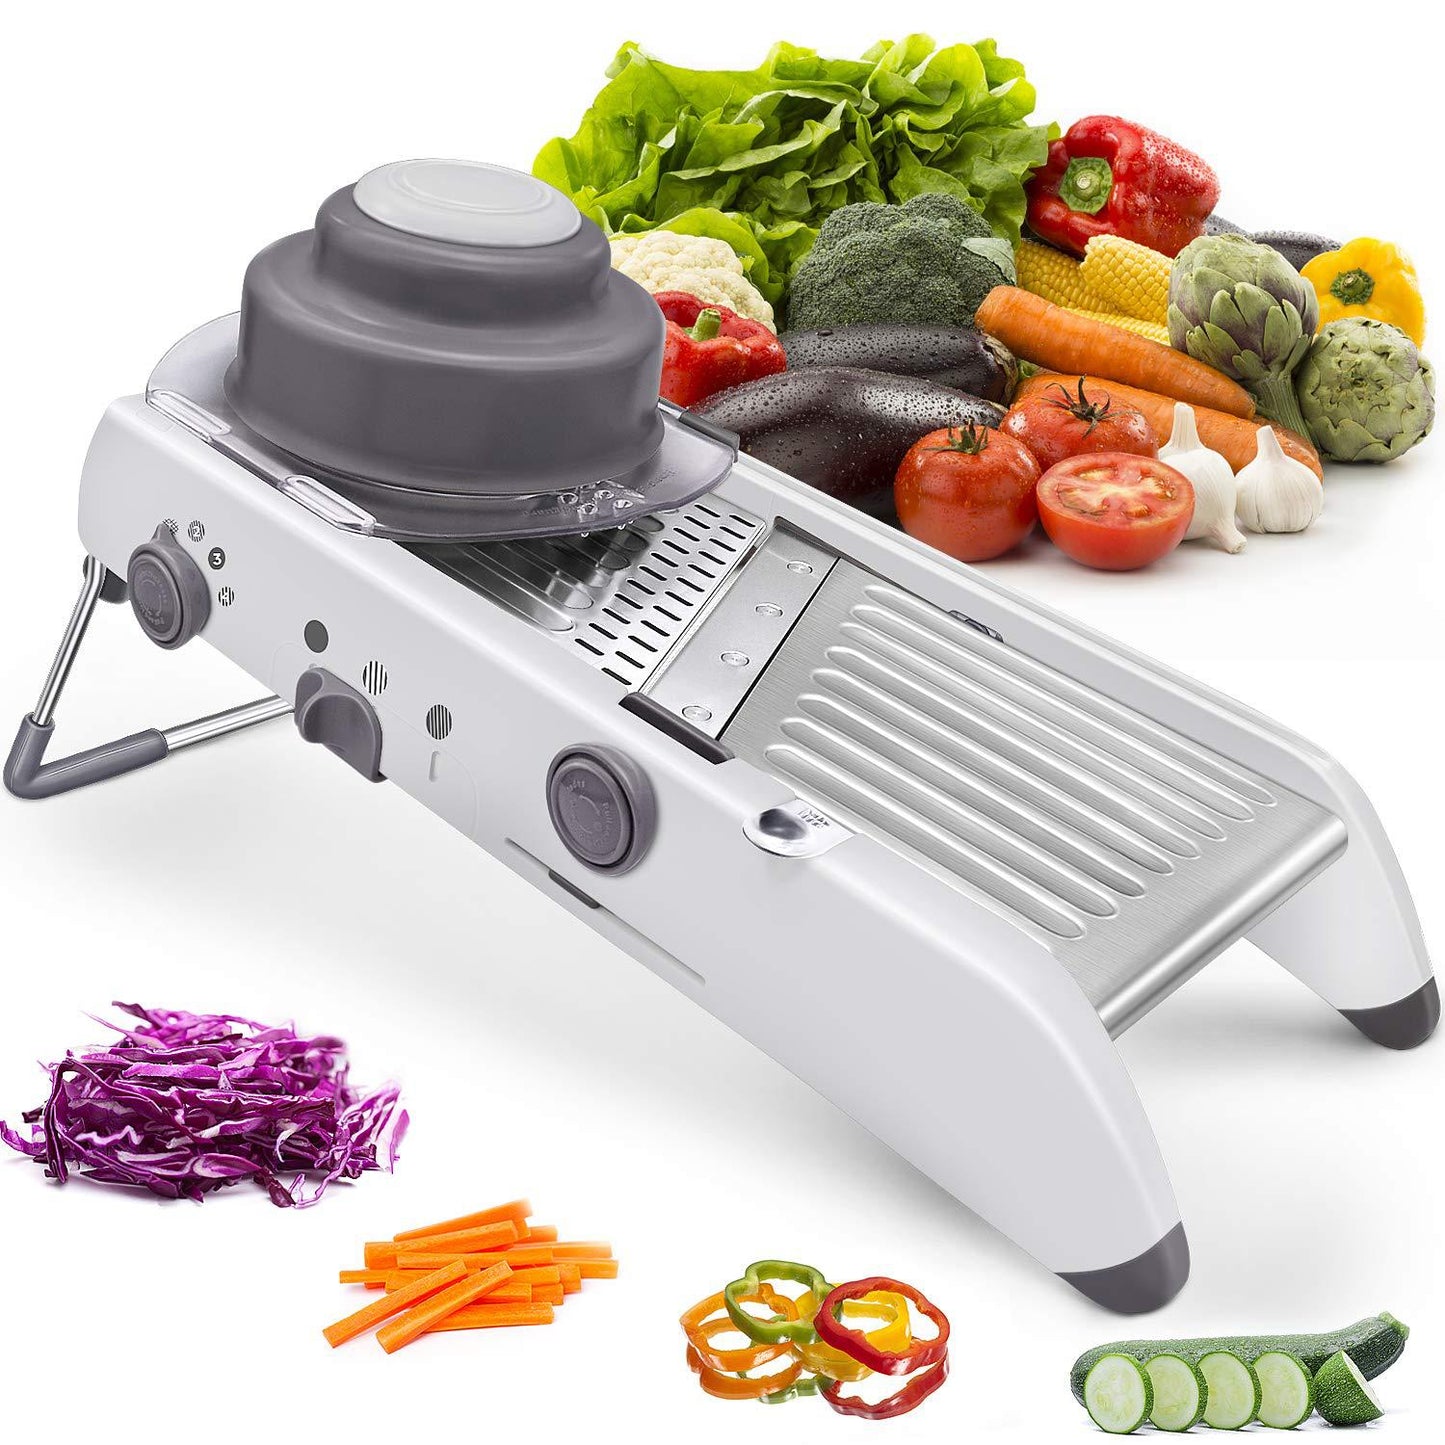 household multi-function vegetable cutter shredder grater stainless steel slicer kitchen potato cutting